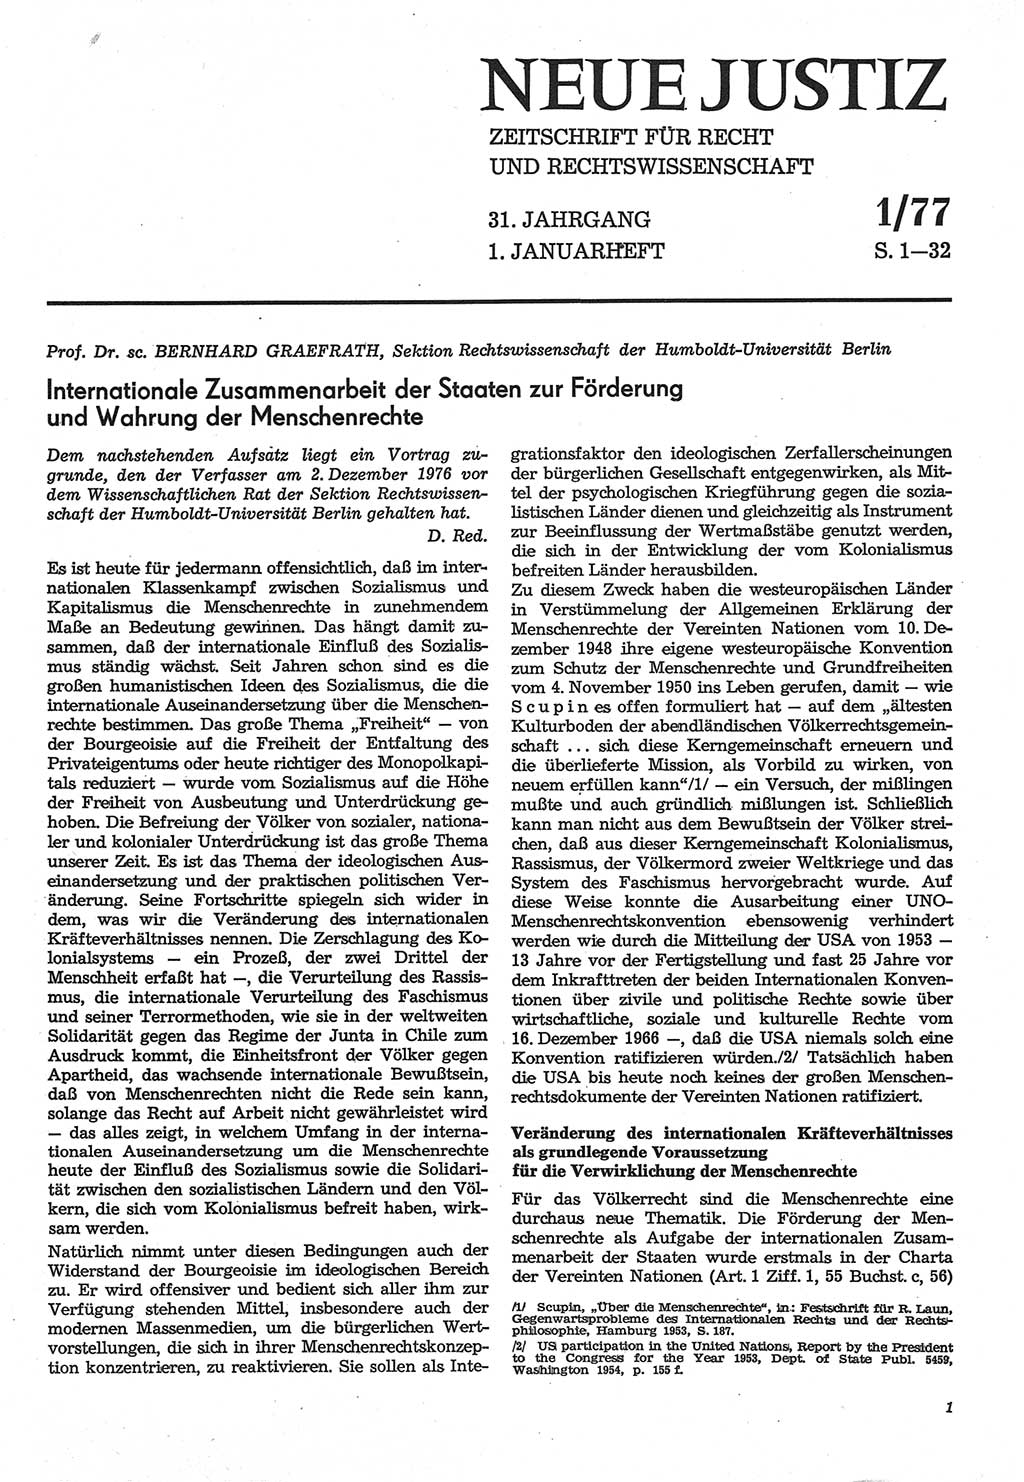 Neue Justiz (NJ), Zeitschrift für Recht und Rechtswissenschaft-Zeitschrift, sozialistisches Recht und Gesetzlichkeit, 31. Jahrgang 1977, Seite 1 (NJ DDR 1977, S. 1)